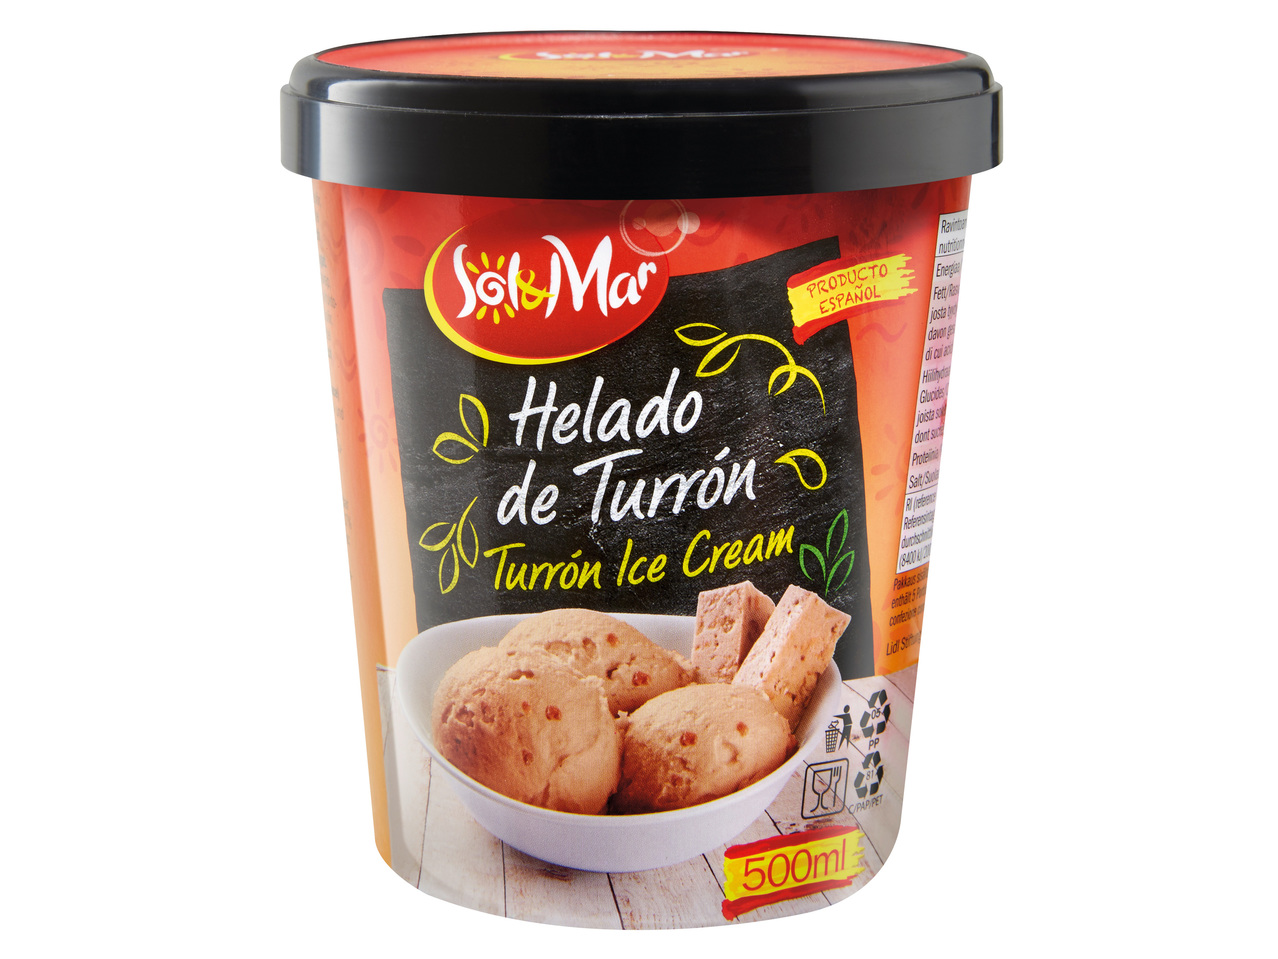 Înghețată Dulce de Leche / Turrón